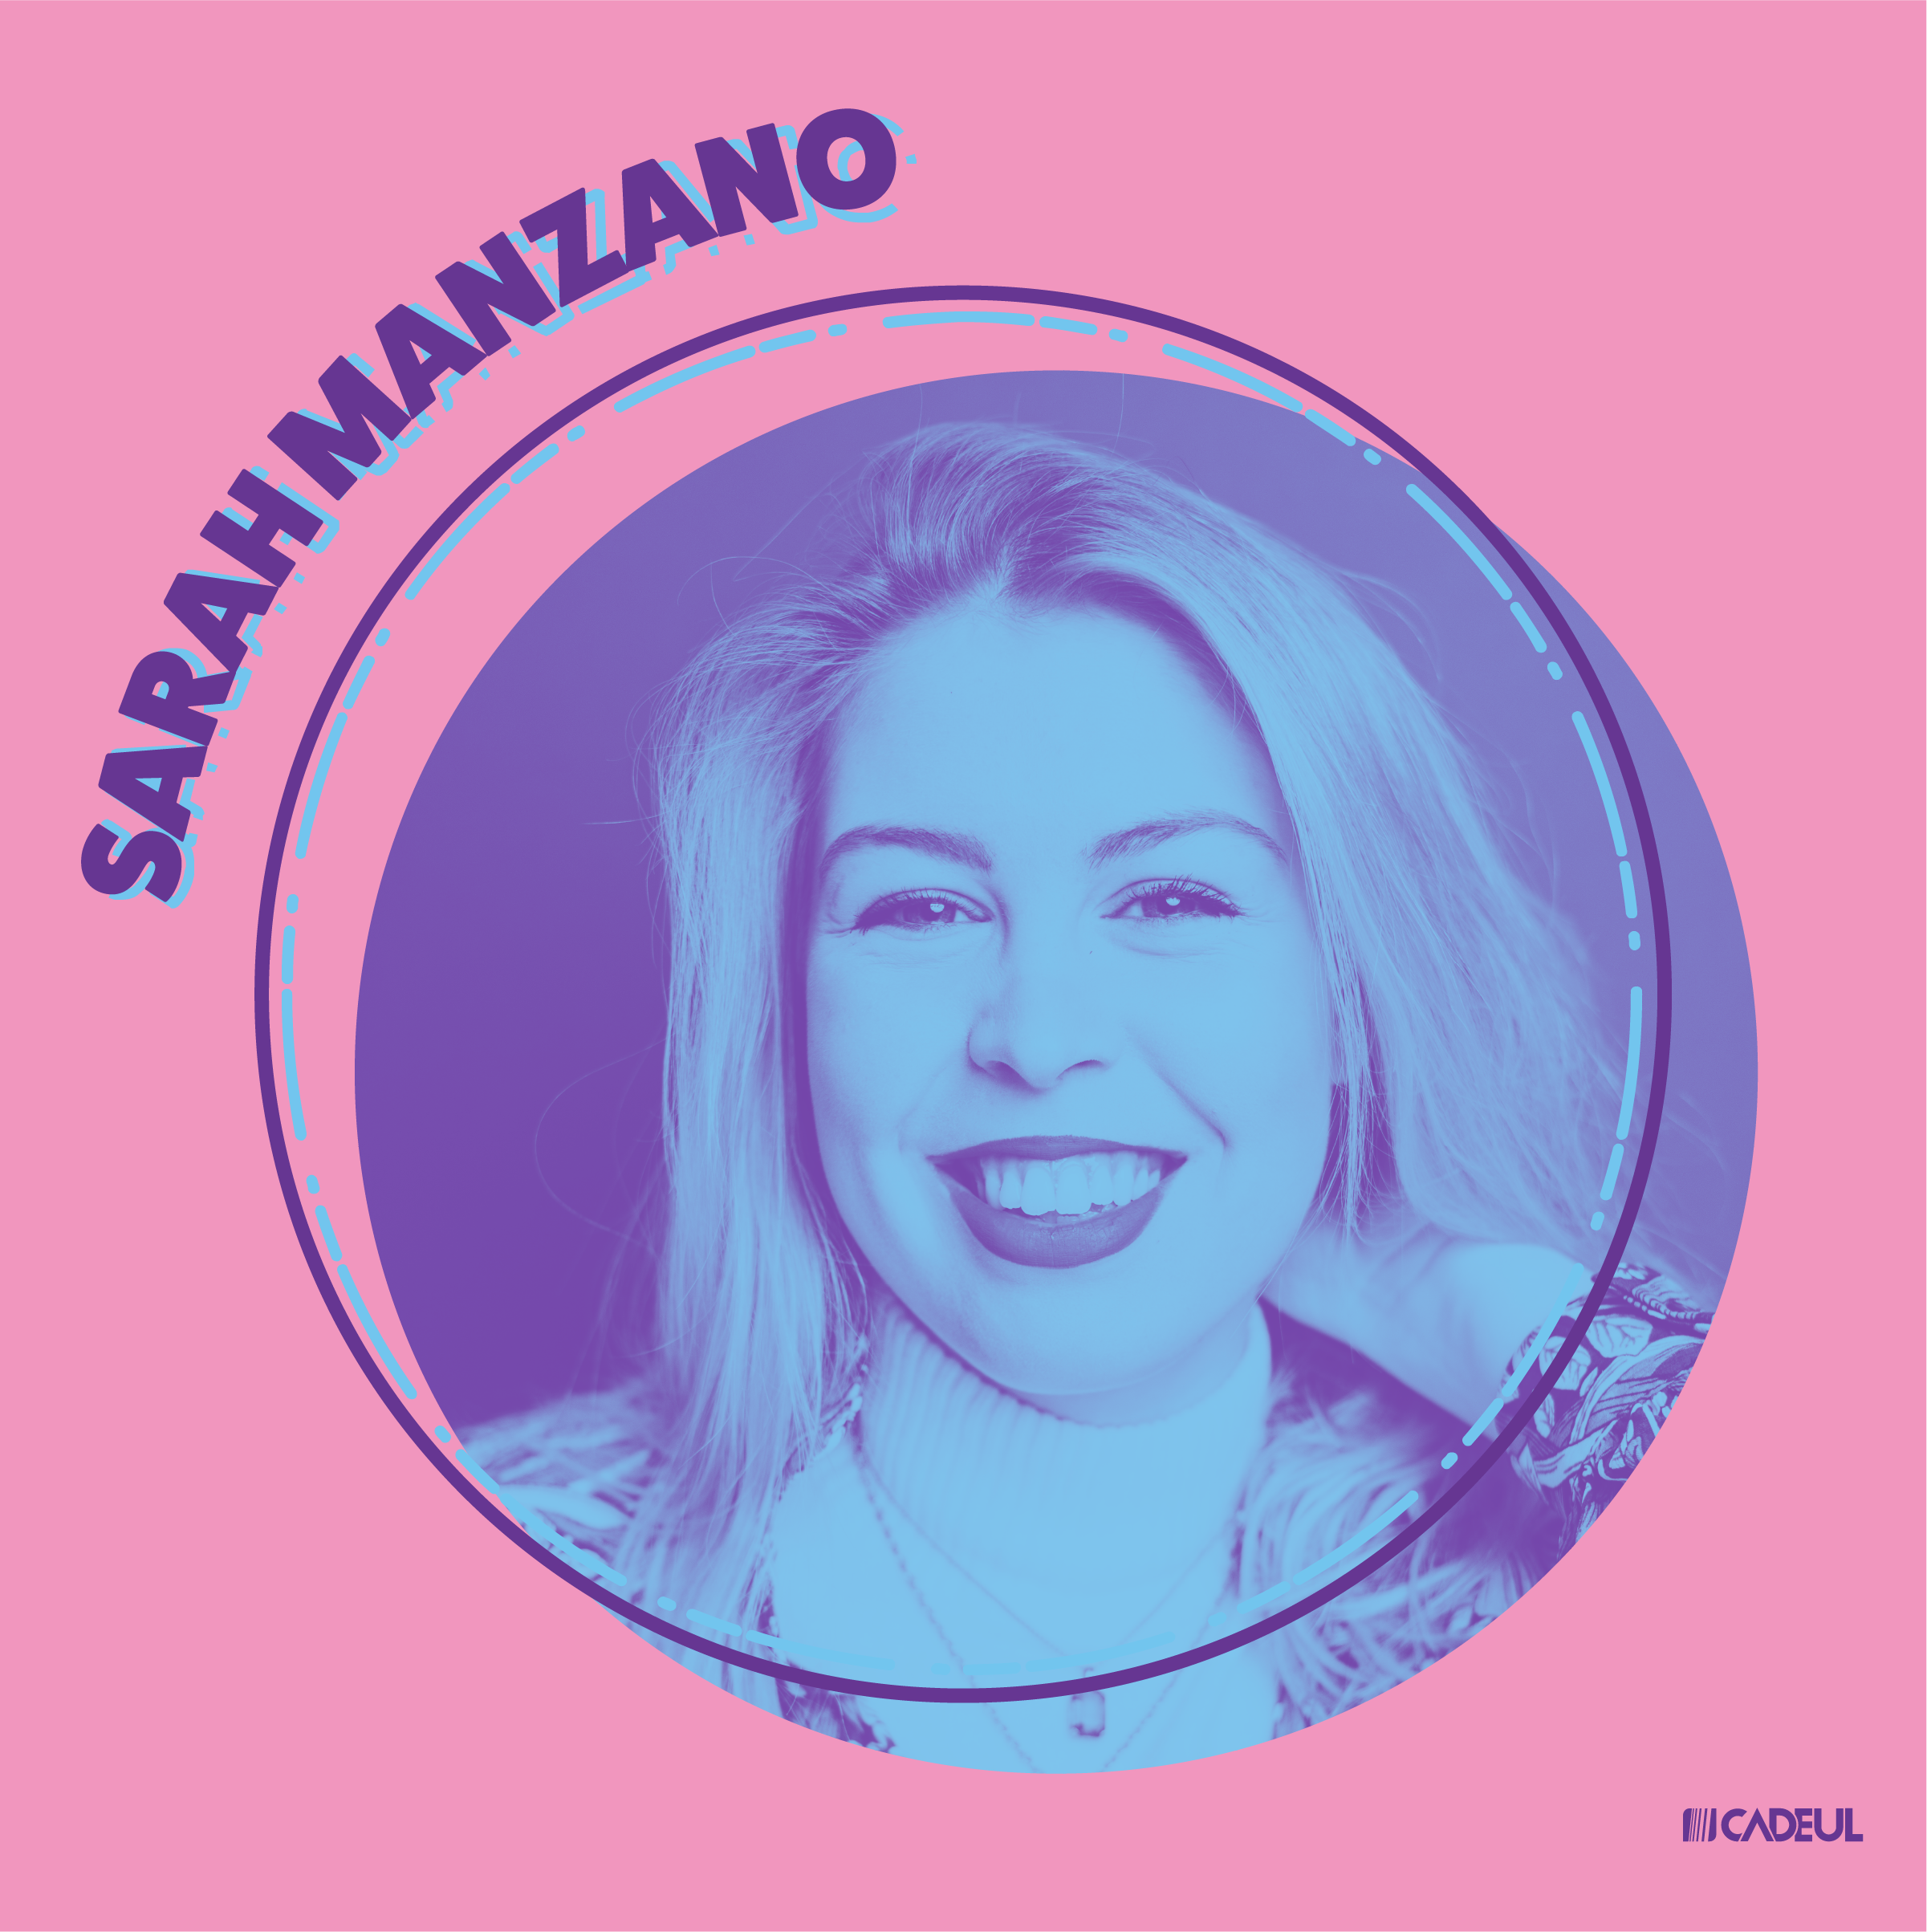 Sarah Manzano